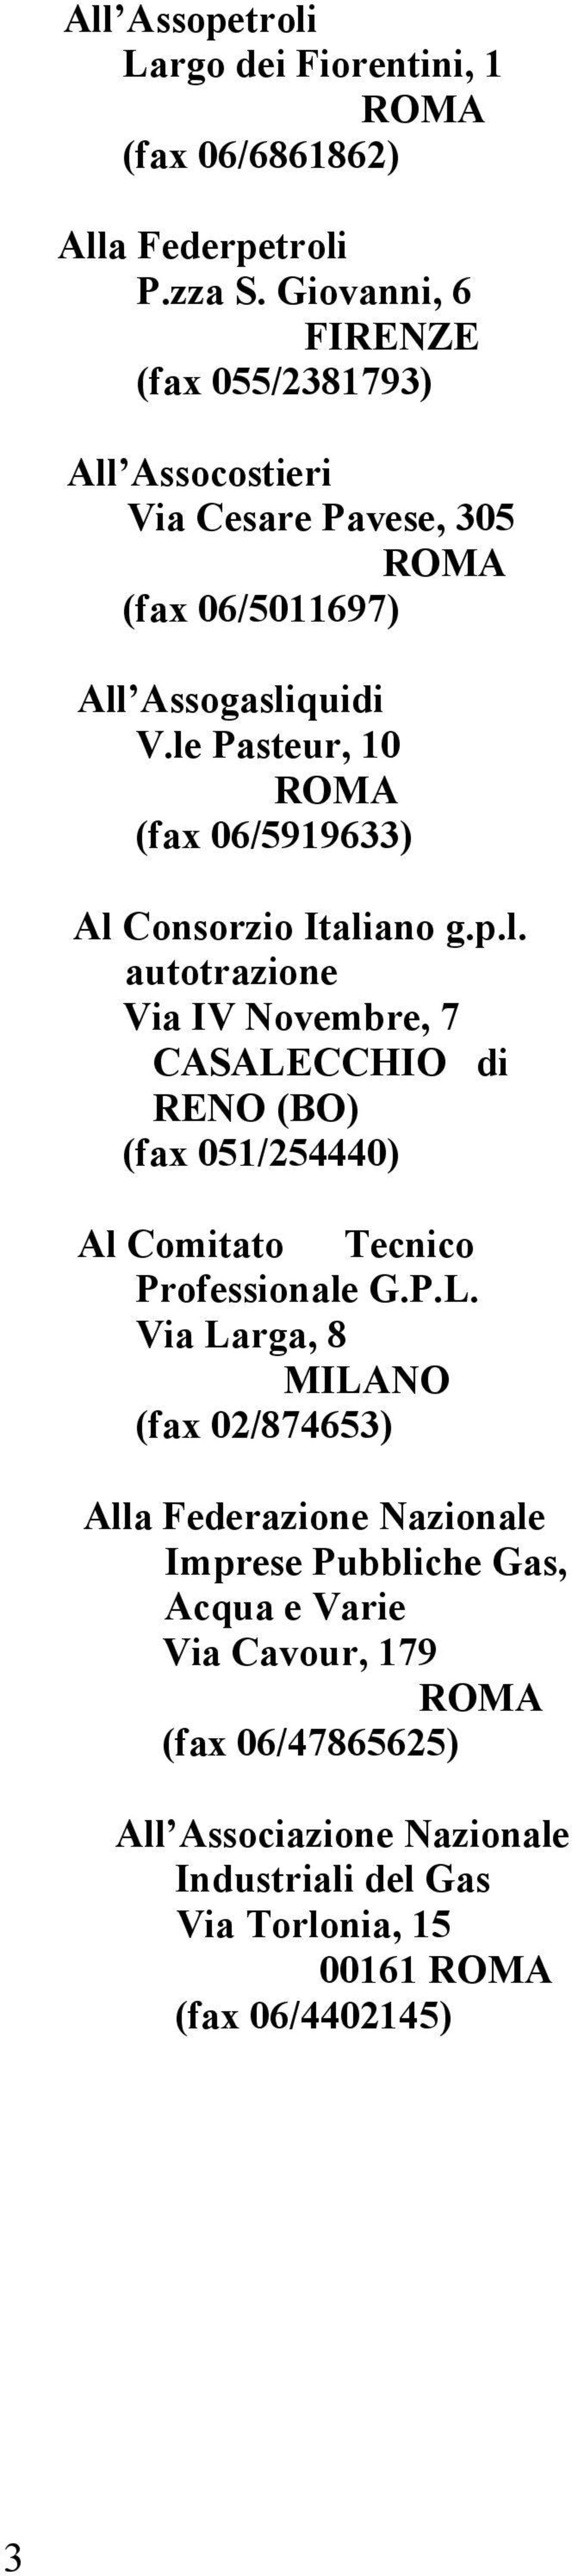 le Pasteur, 10 (fax 06/5919633) Al Consorzio Italiano g.p.l. autotrazione Via IV Novembre, 7 CASALECCHIO di RENO (BO) (fax 051/254440) Al Comitato Tecnico Professionale G.